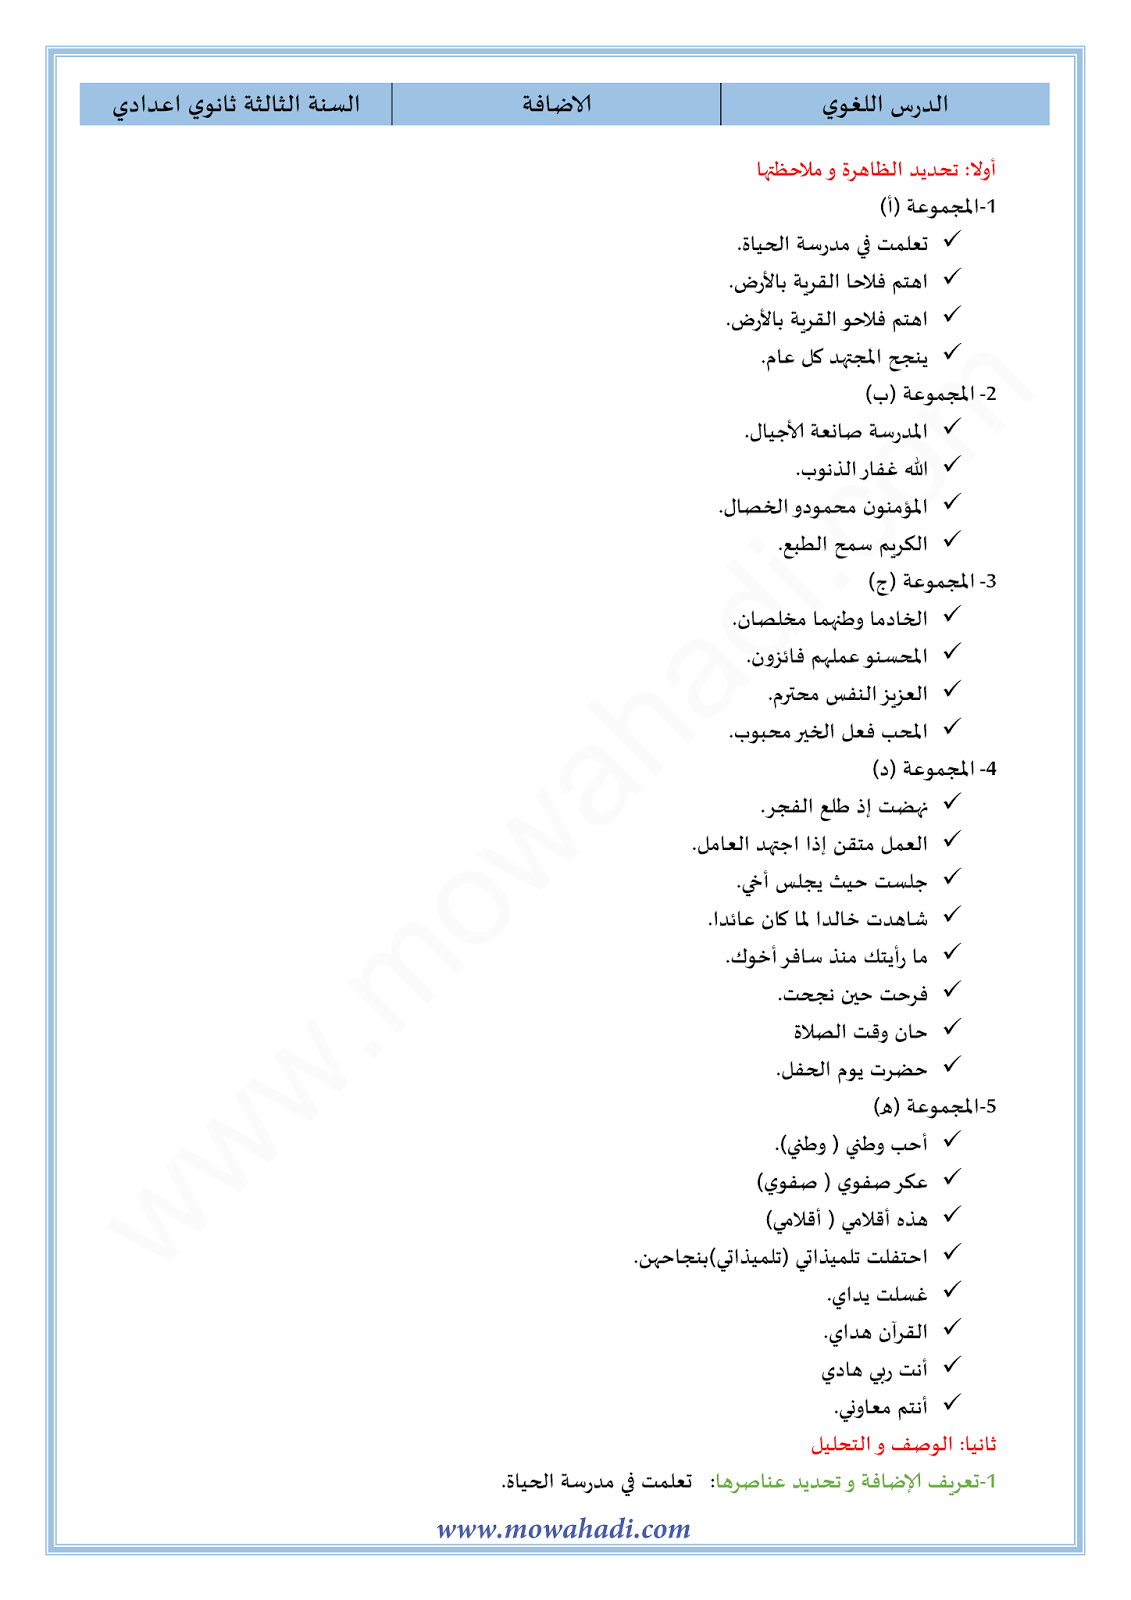 الدرس اللغوي الإضافة للسنة الثالثة اعدادي في مادة اللغة العربية 6-cours-dars-loghawi3_001